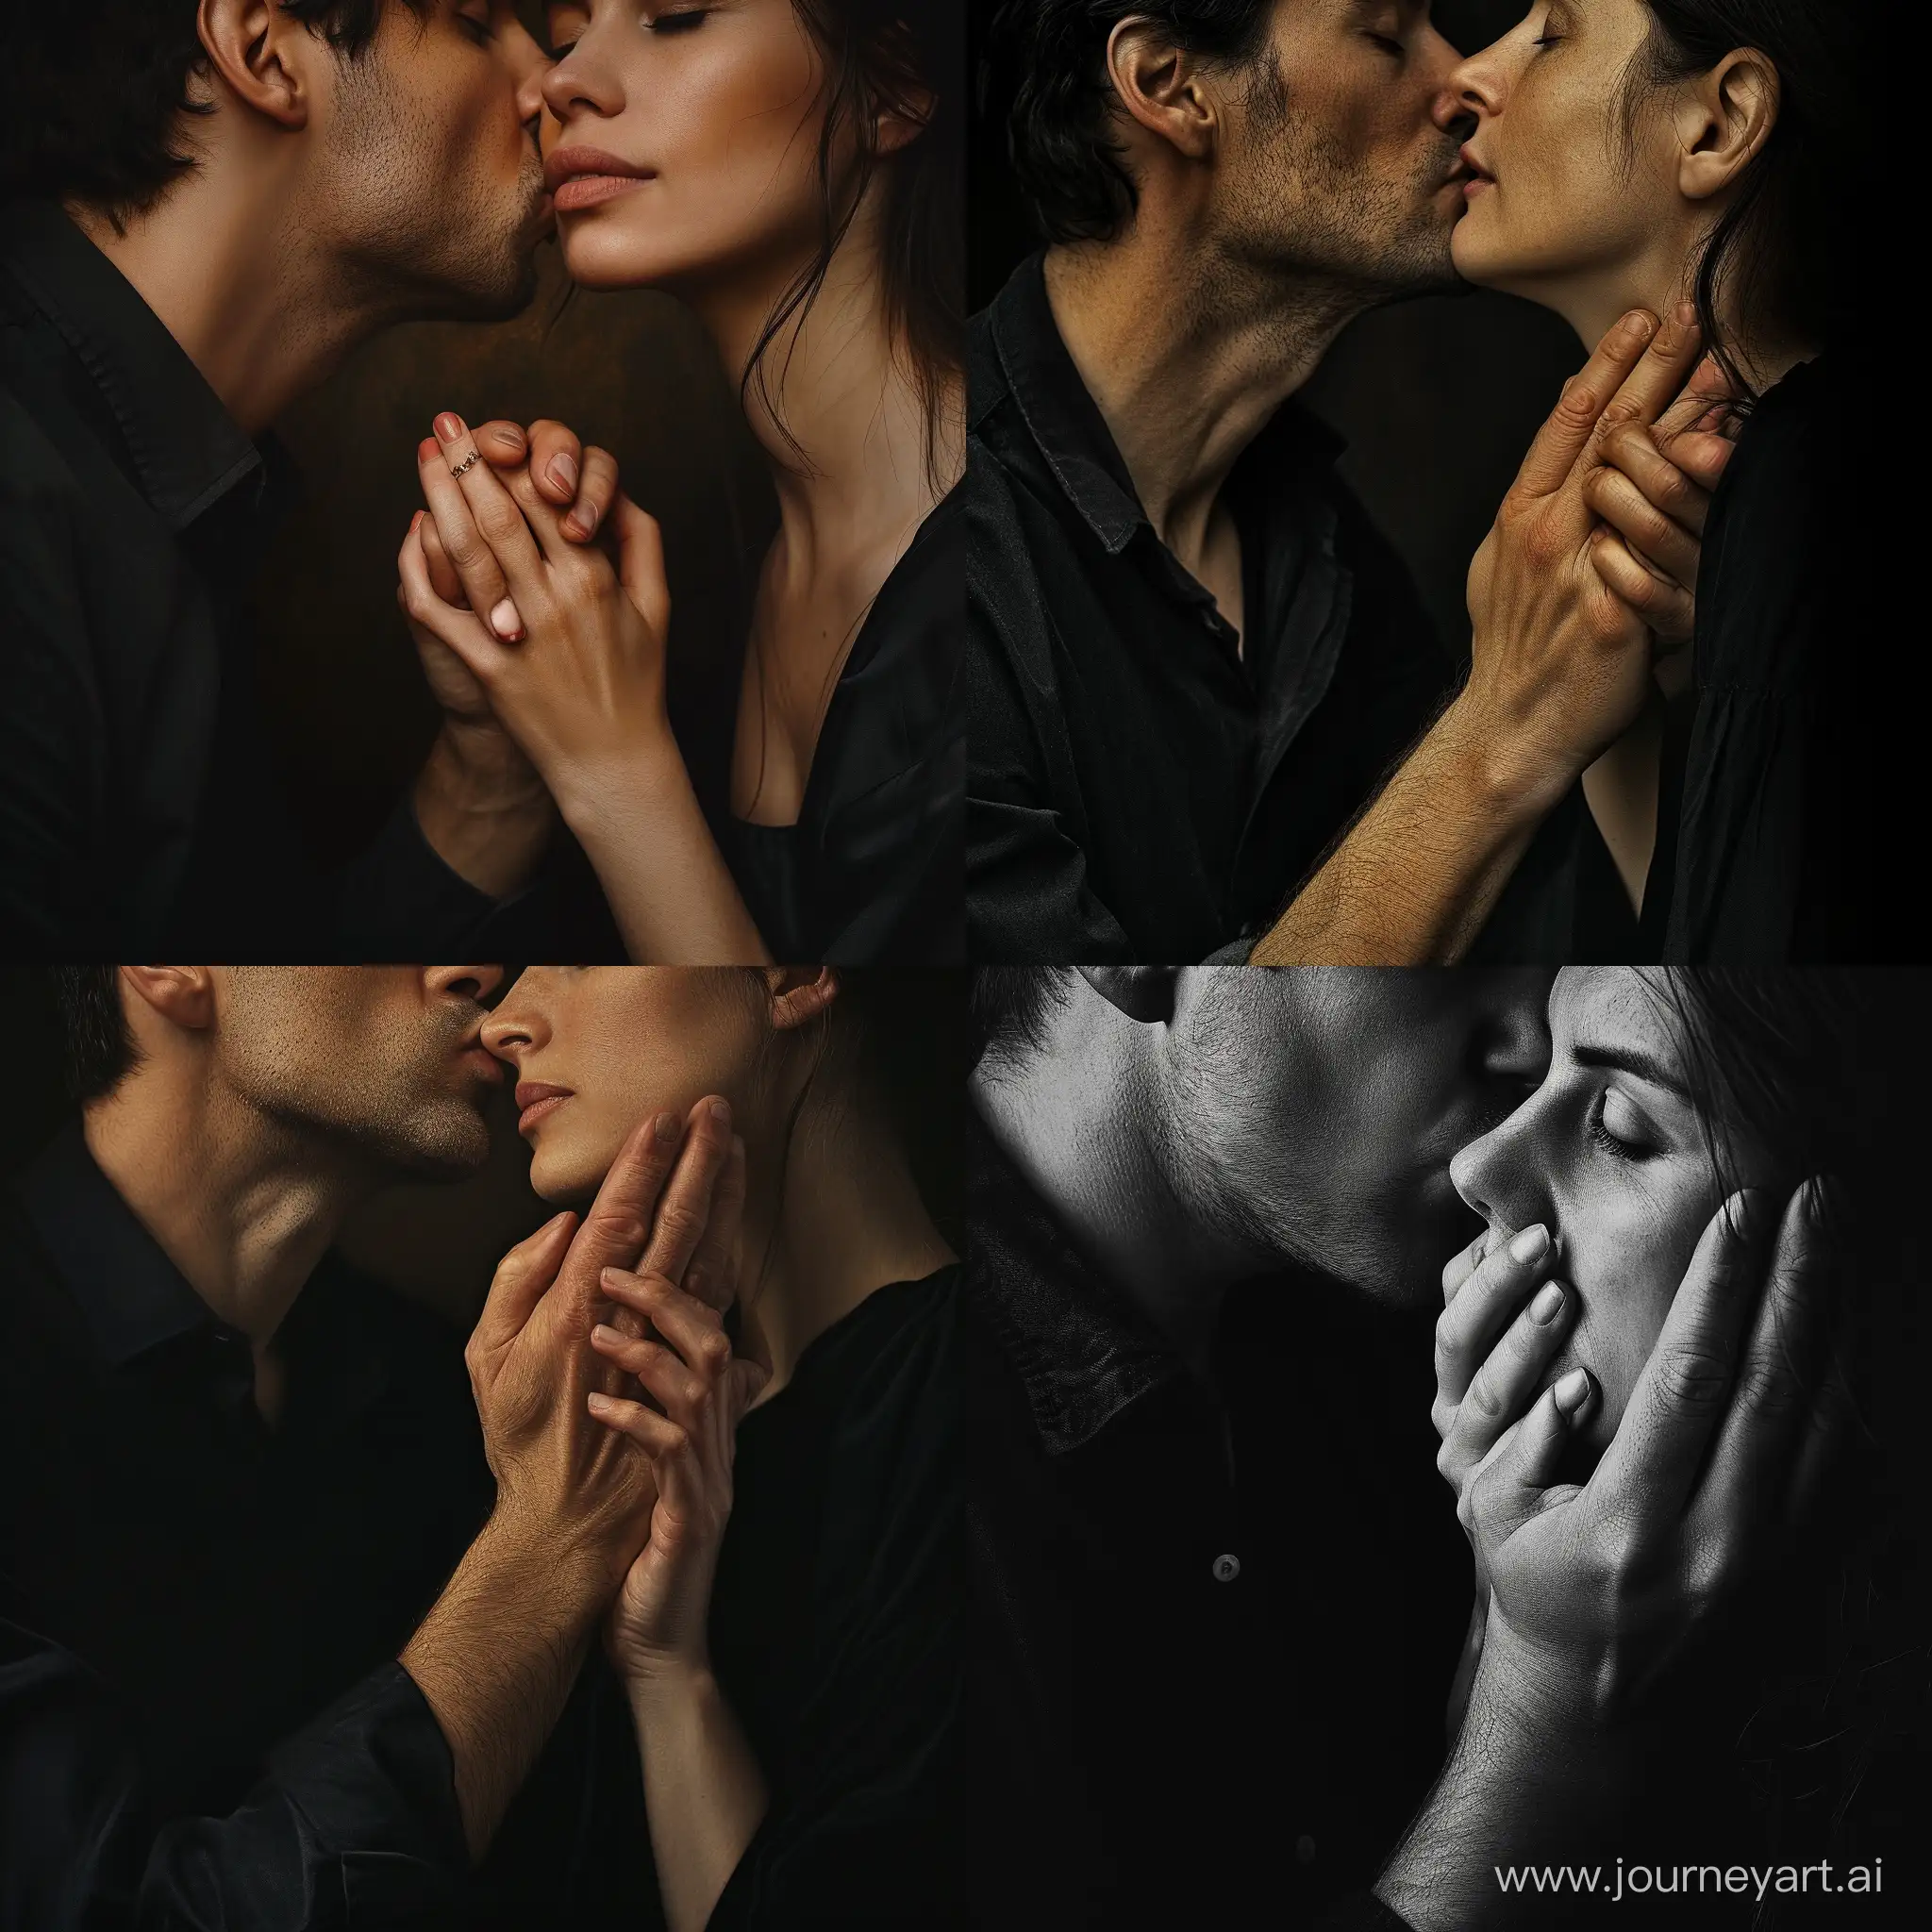 Мужчина целует руку женщине. Реалистичное фото в современном стиле.